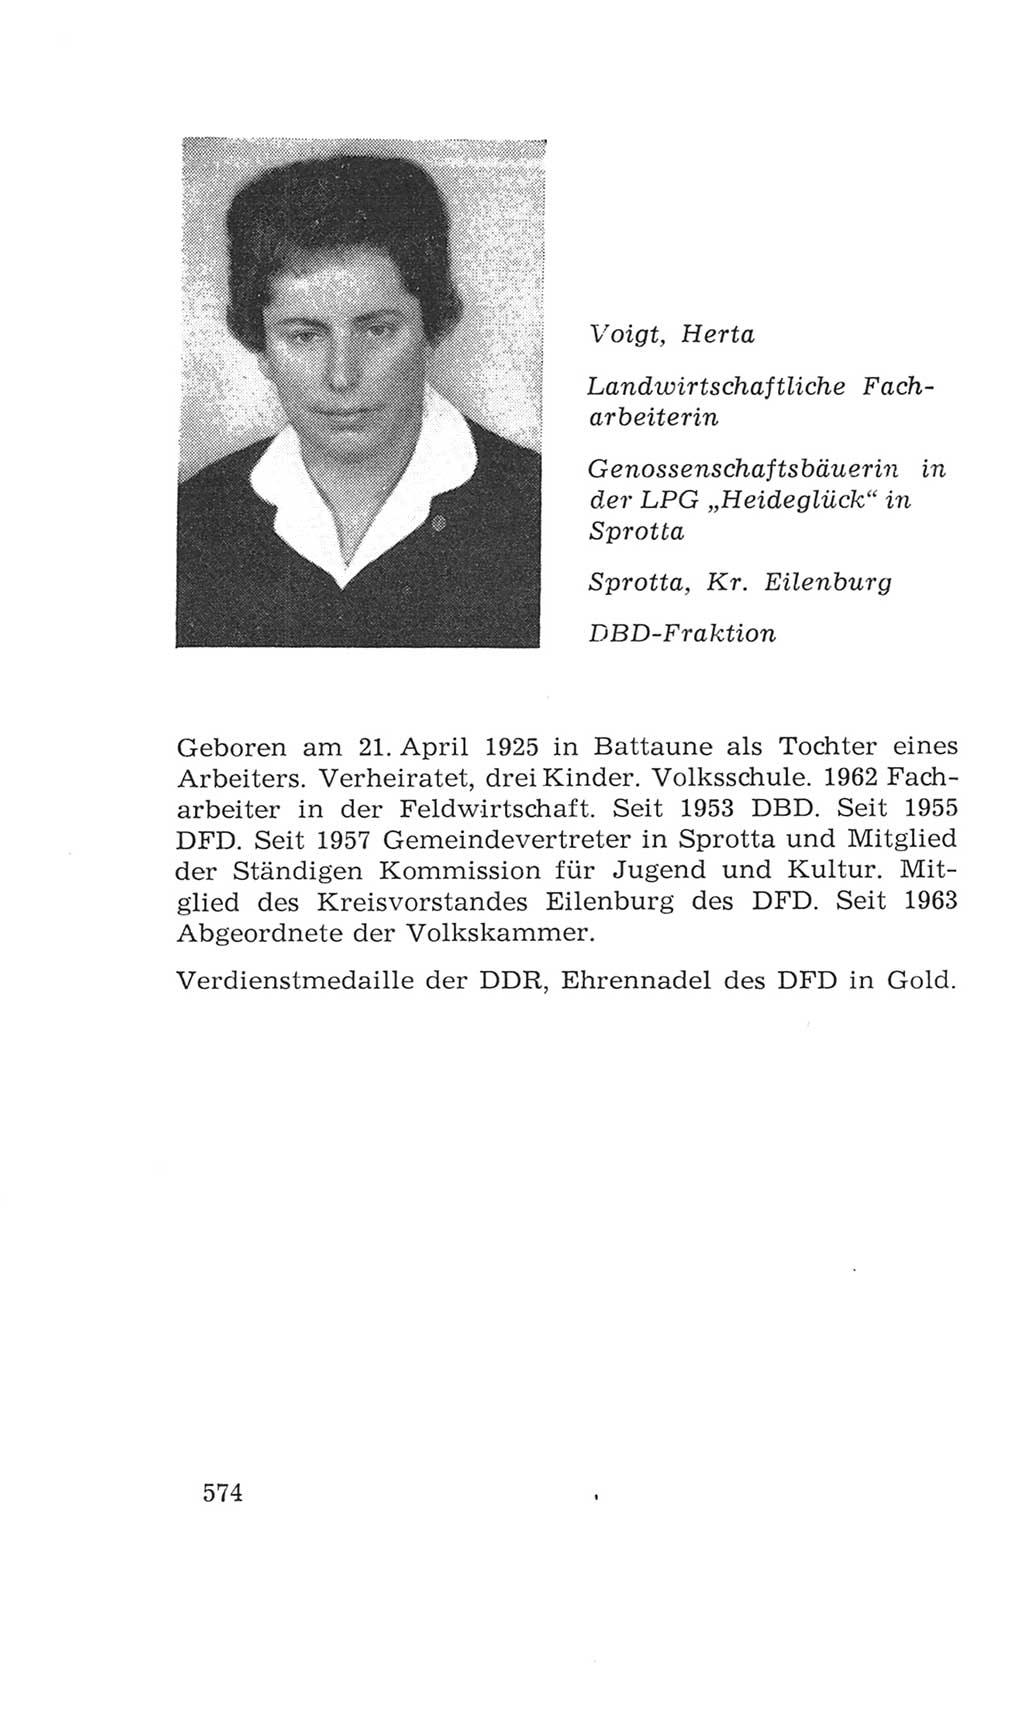 Volkskammer (VK) der Deutschen Demokratischen Republik (DDR), 4. Wahlperiode 1963-1967, Seite 574 (VK. DDR 4. WP. 1963-1967, S. 574)